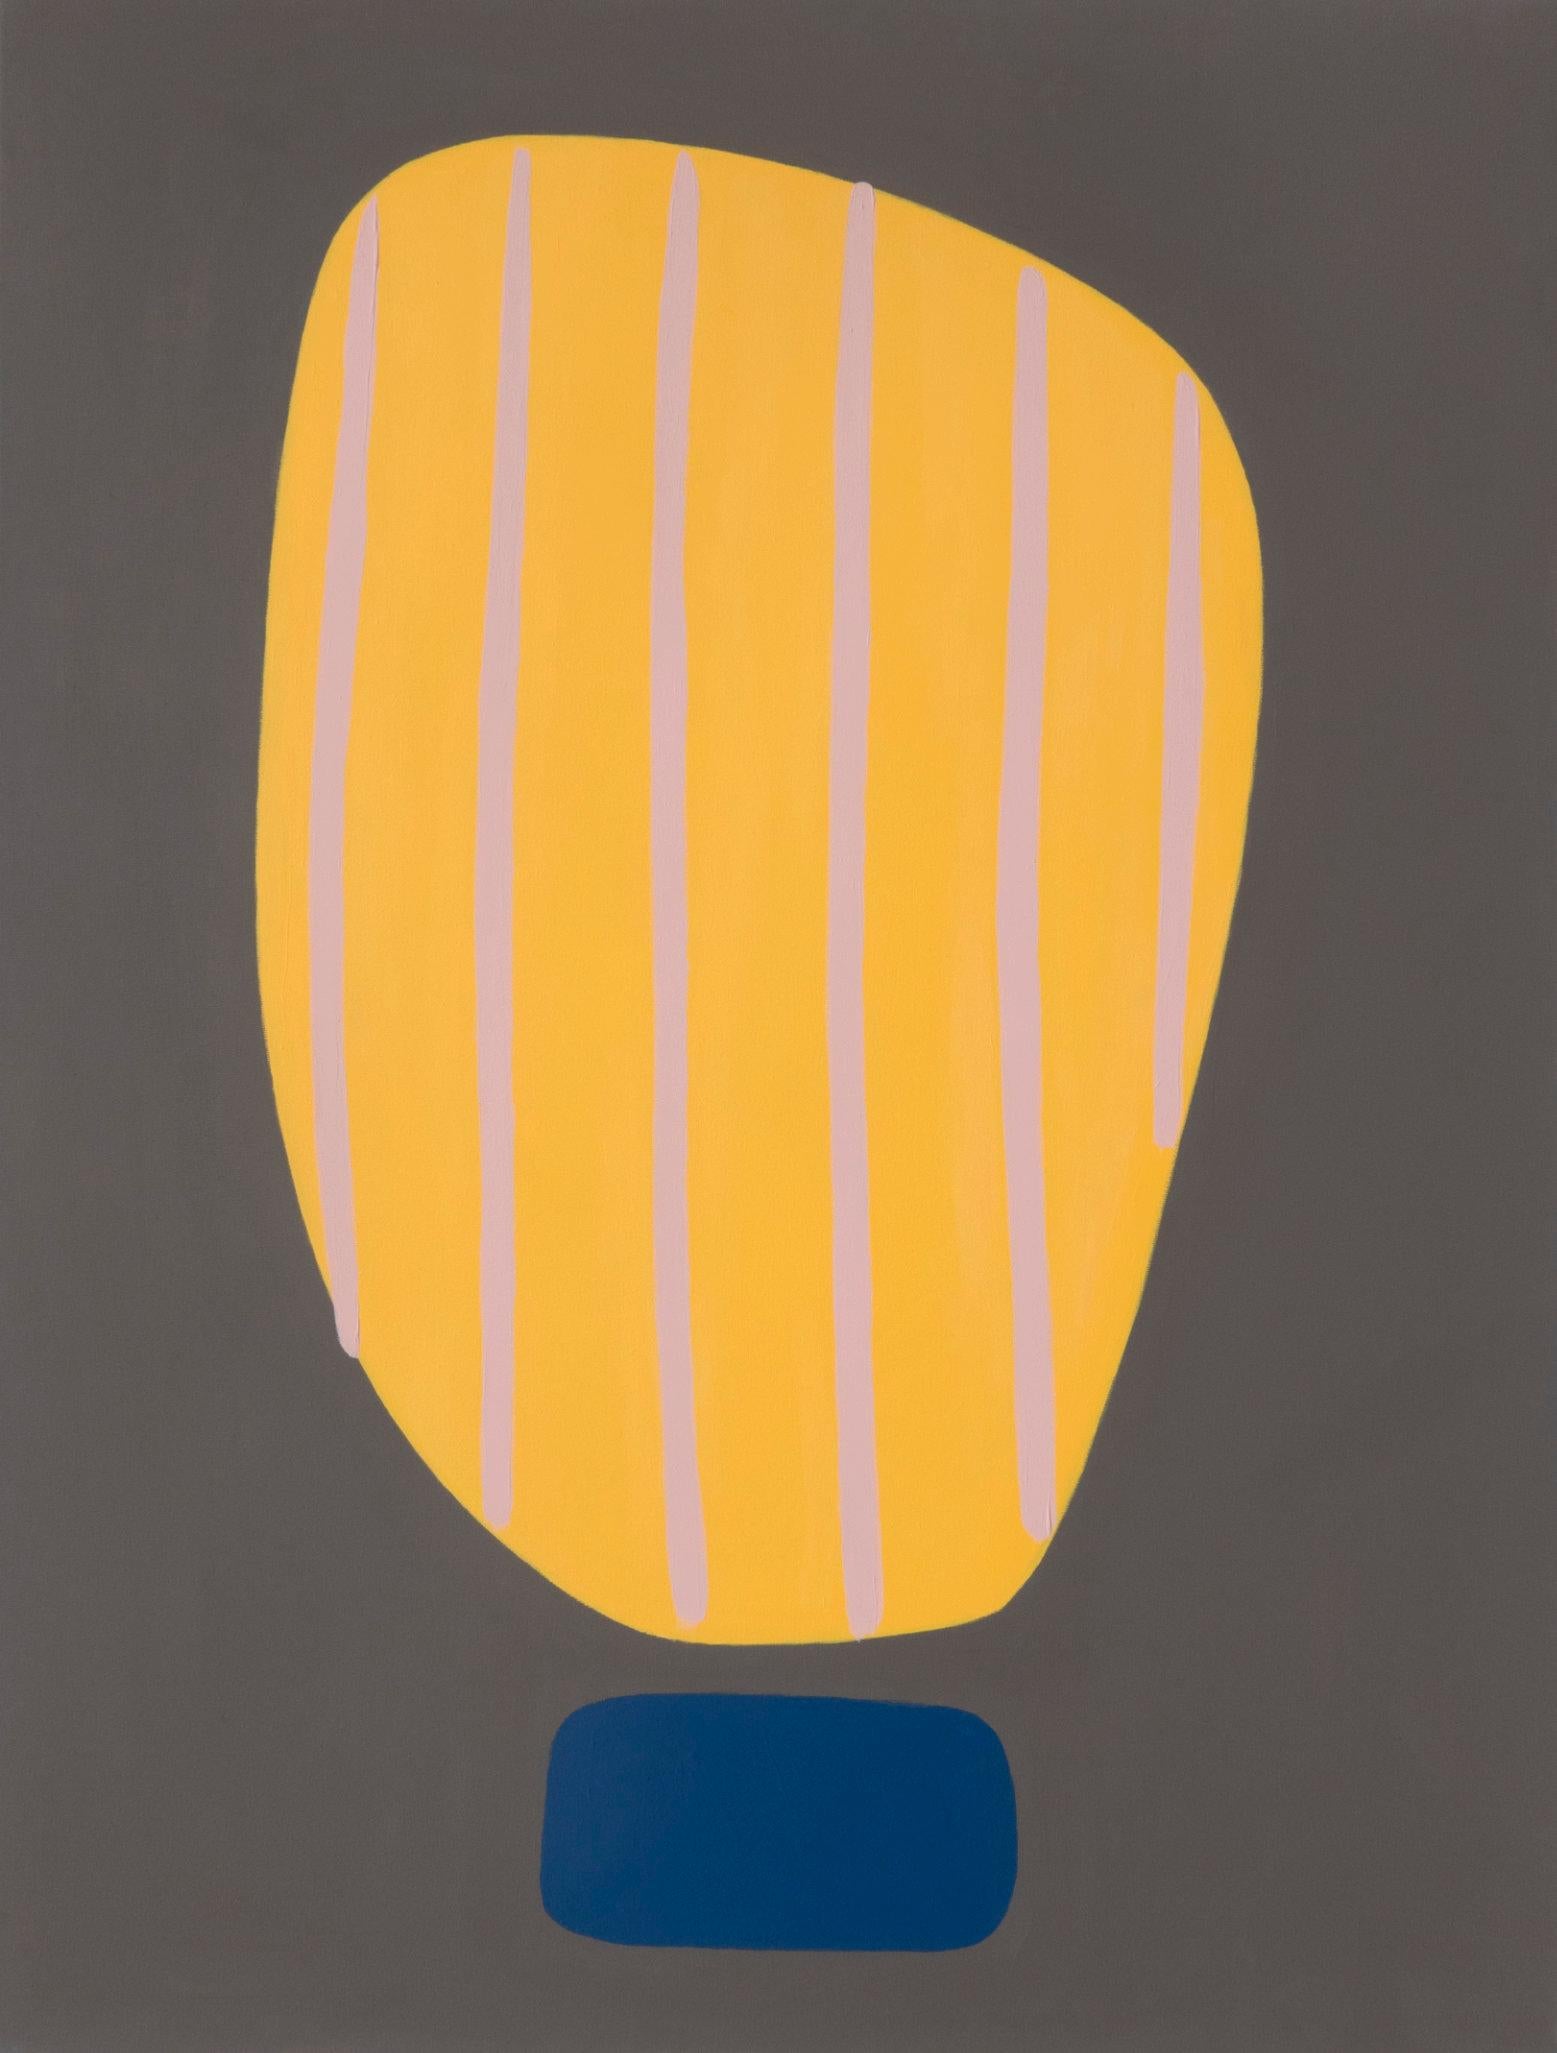 Abstraktes Acrylgemälde „Beaming IV“, kräftiges Dunkelgelb auf Grau, Streifen gewölbt